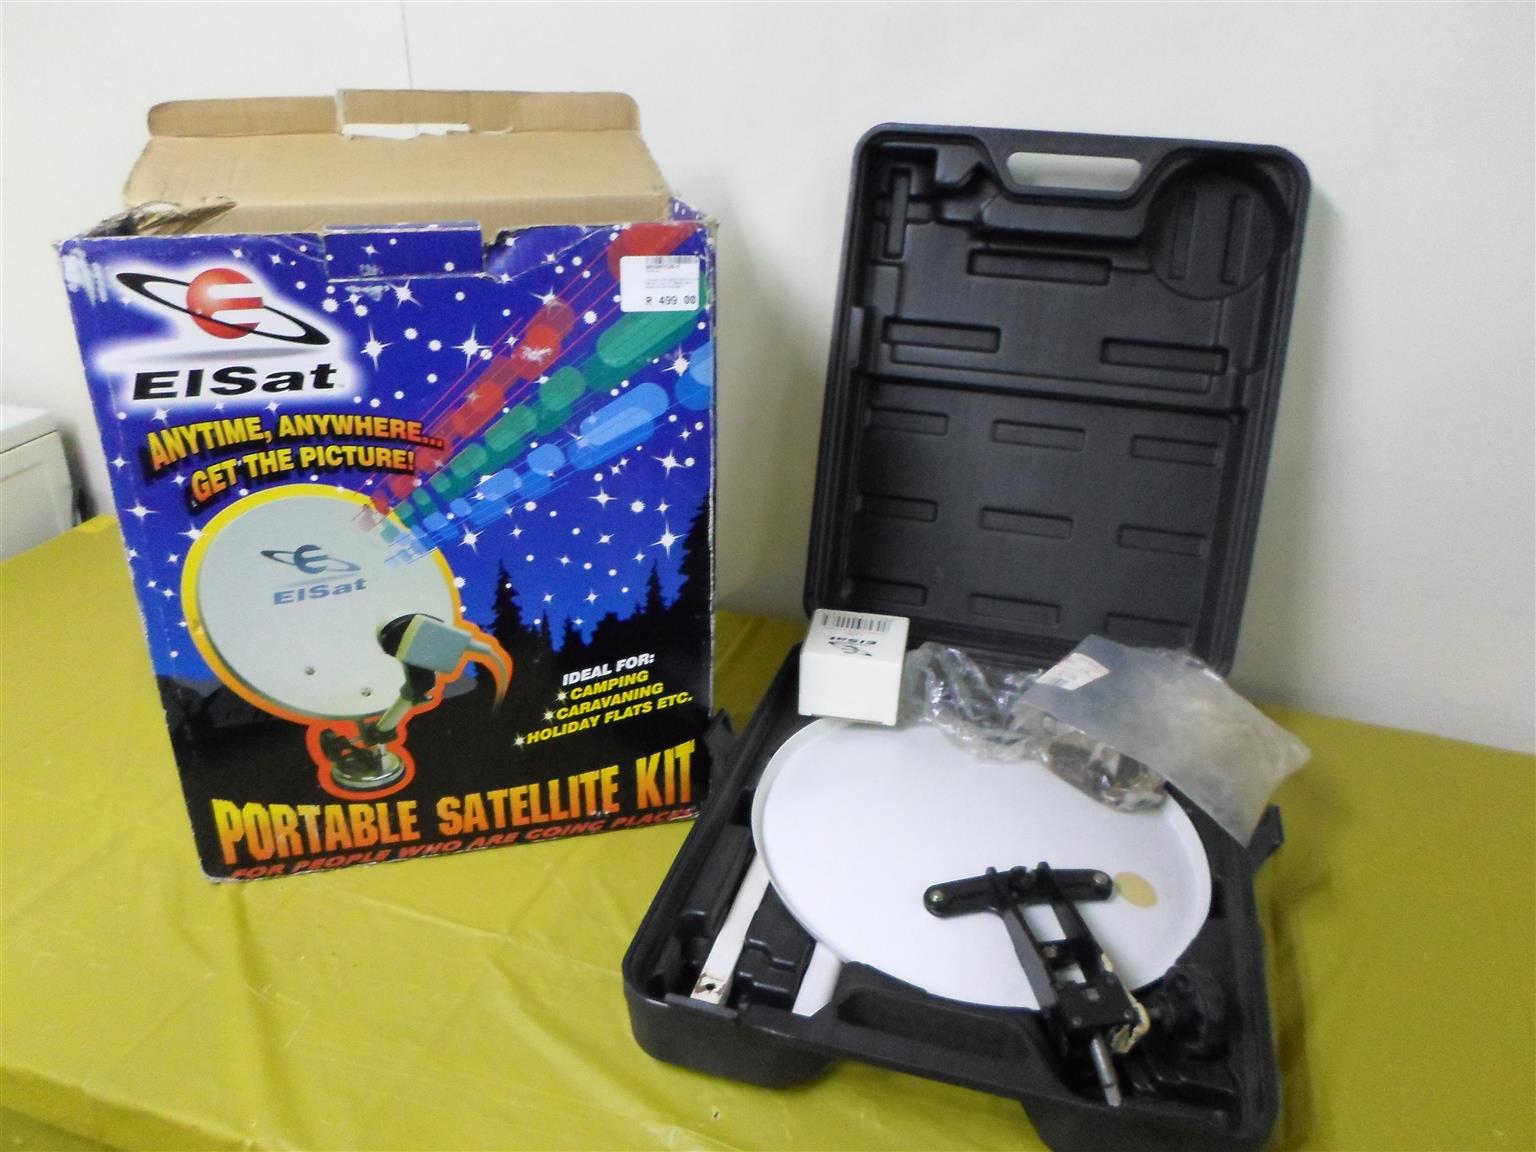 Elsat Portable Satellite Kit